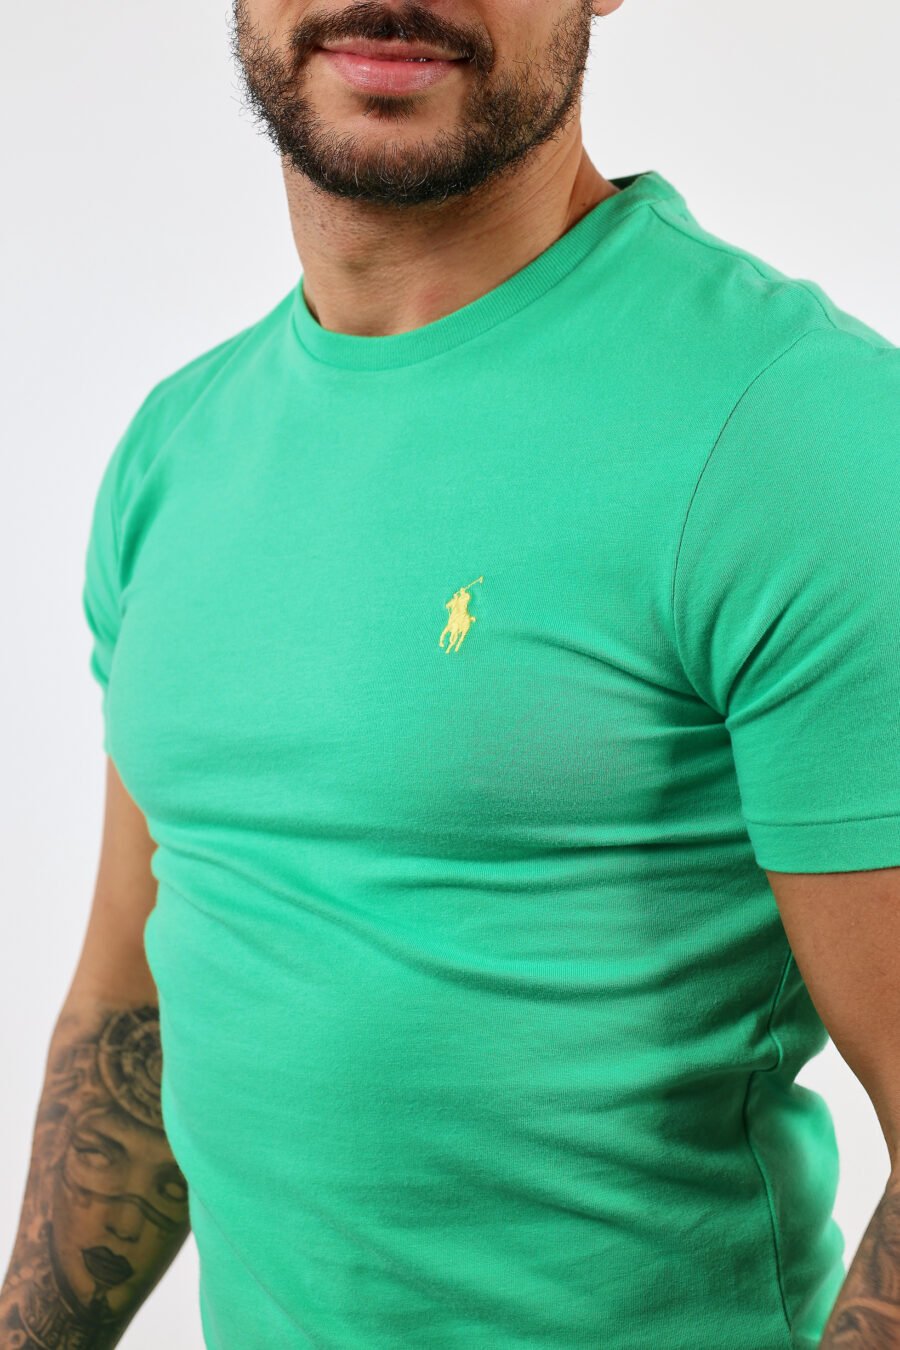 Camiseta verde y amarilla con minilogo "polo" - BLS Fashion 303